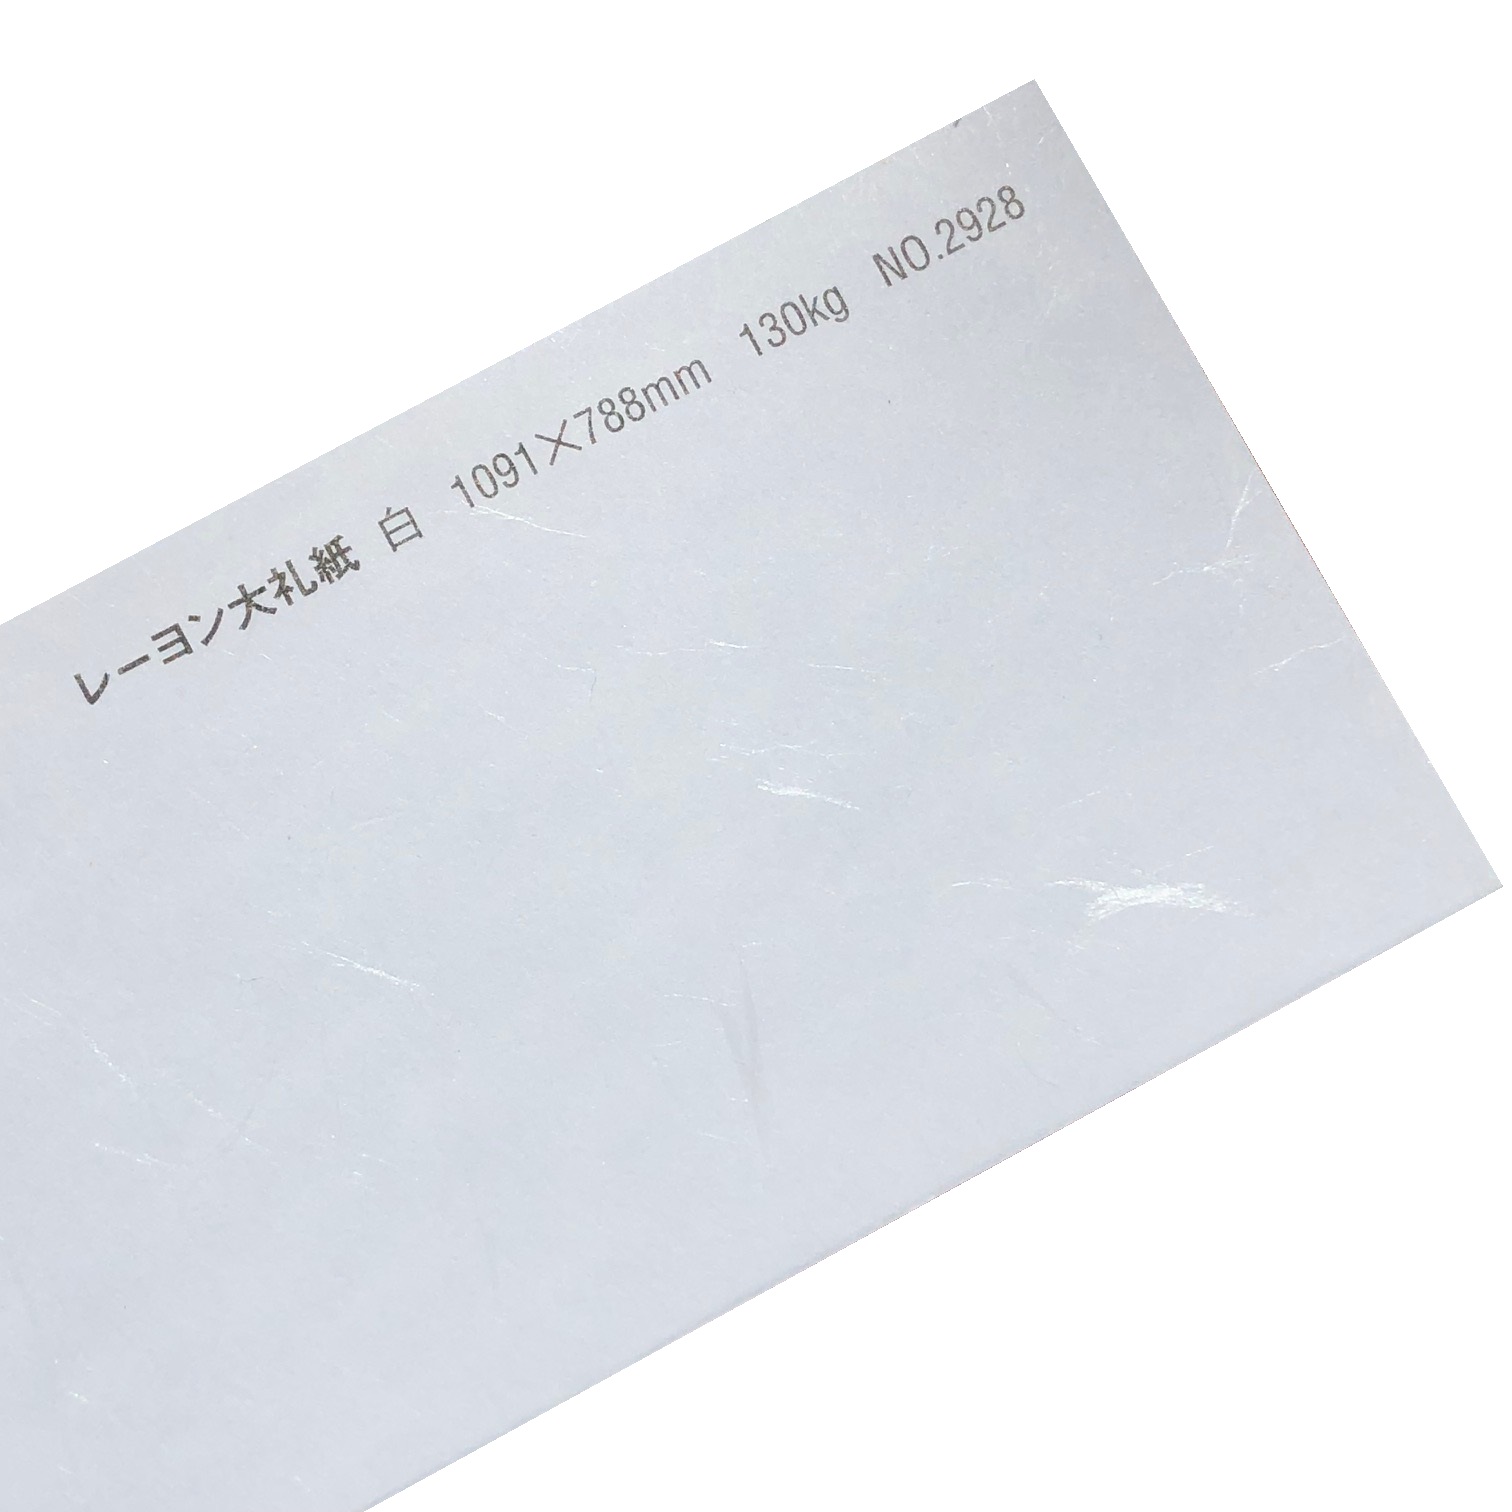 レーヨン大礼紙 130kg(0.21mm) 和紙 No.2928 商品画像サムネイル0